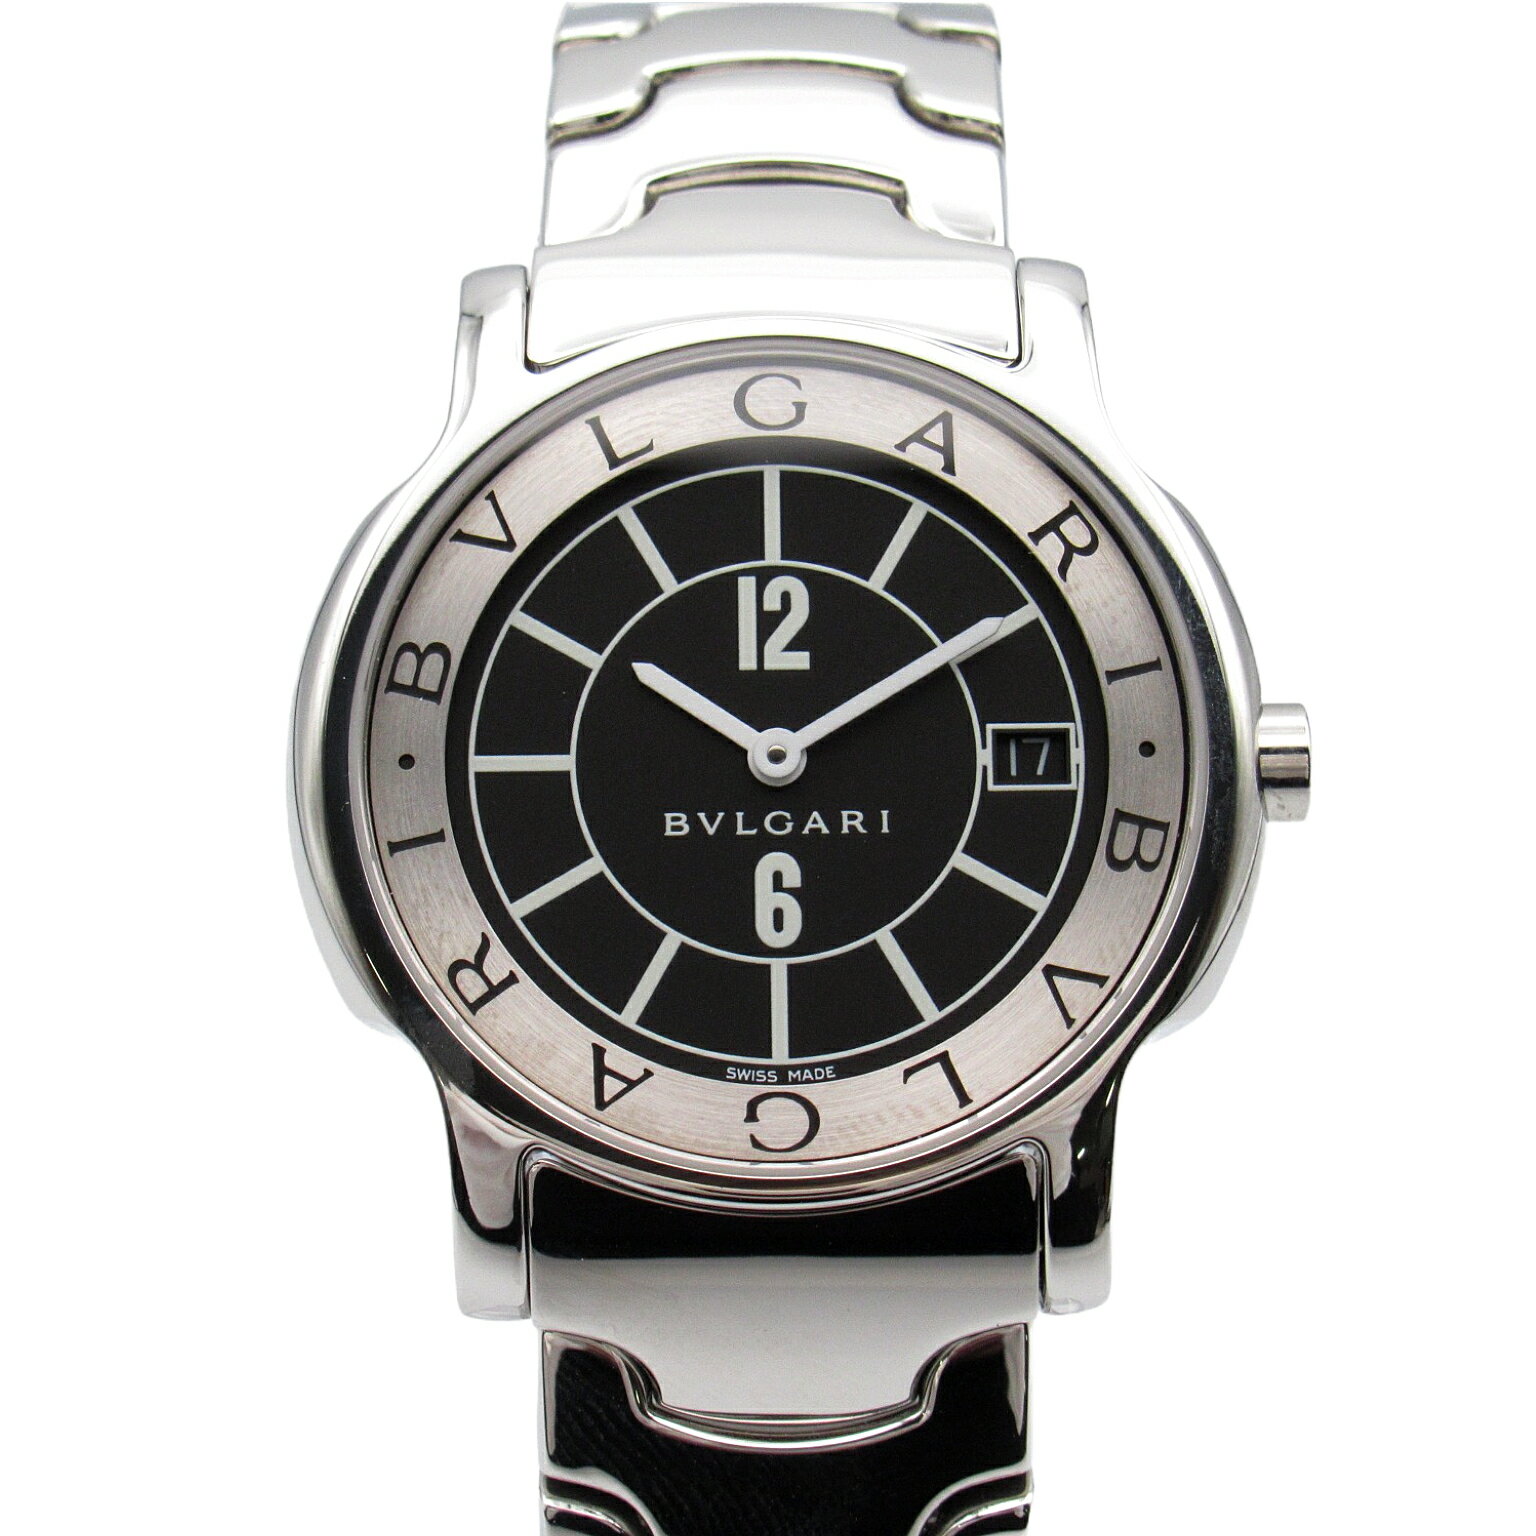 ブルガリ BVLGARI ソロテンポ 腕時計 時計 ステンレススチール メンズ レディース ブラック系 ST35S 【中古】